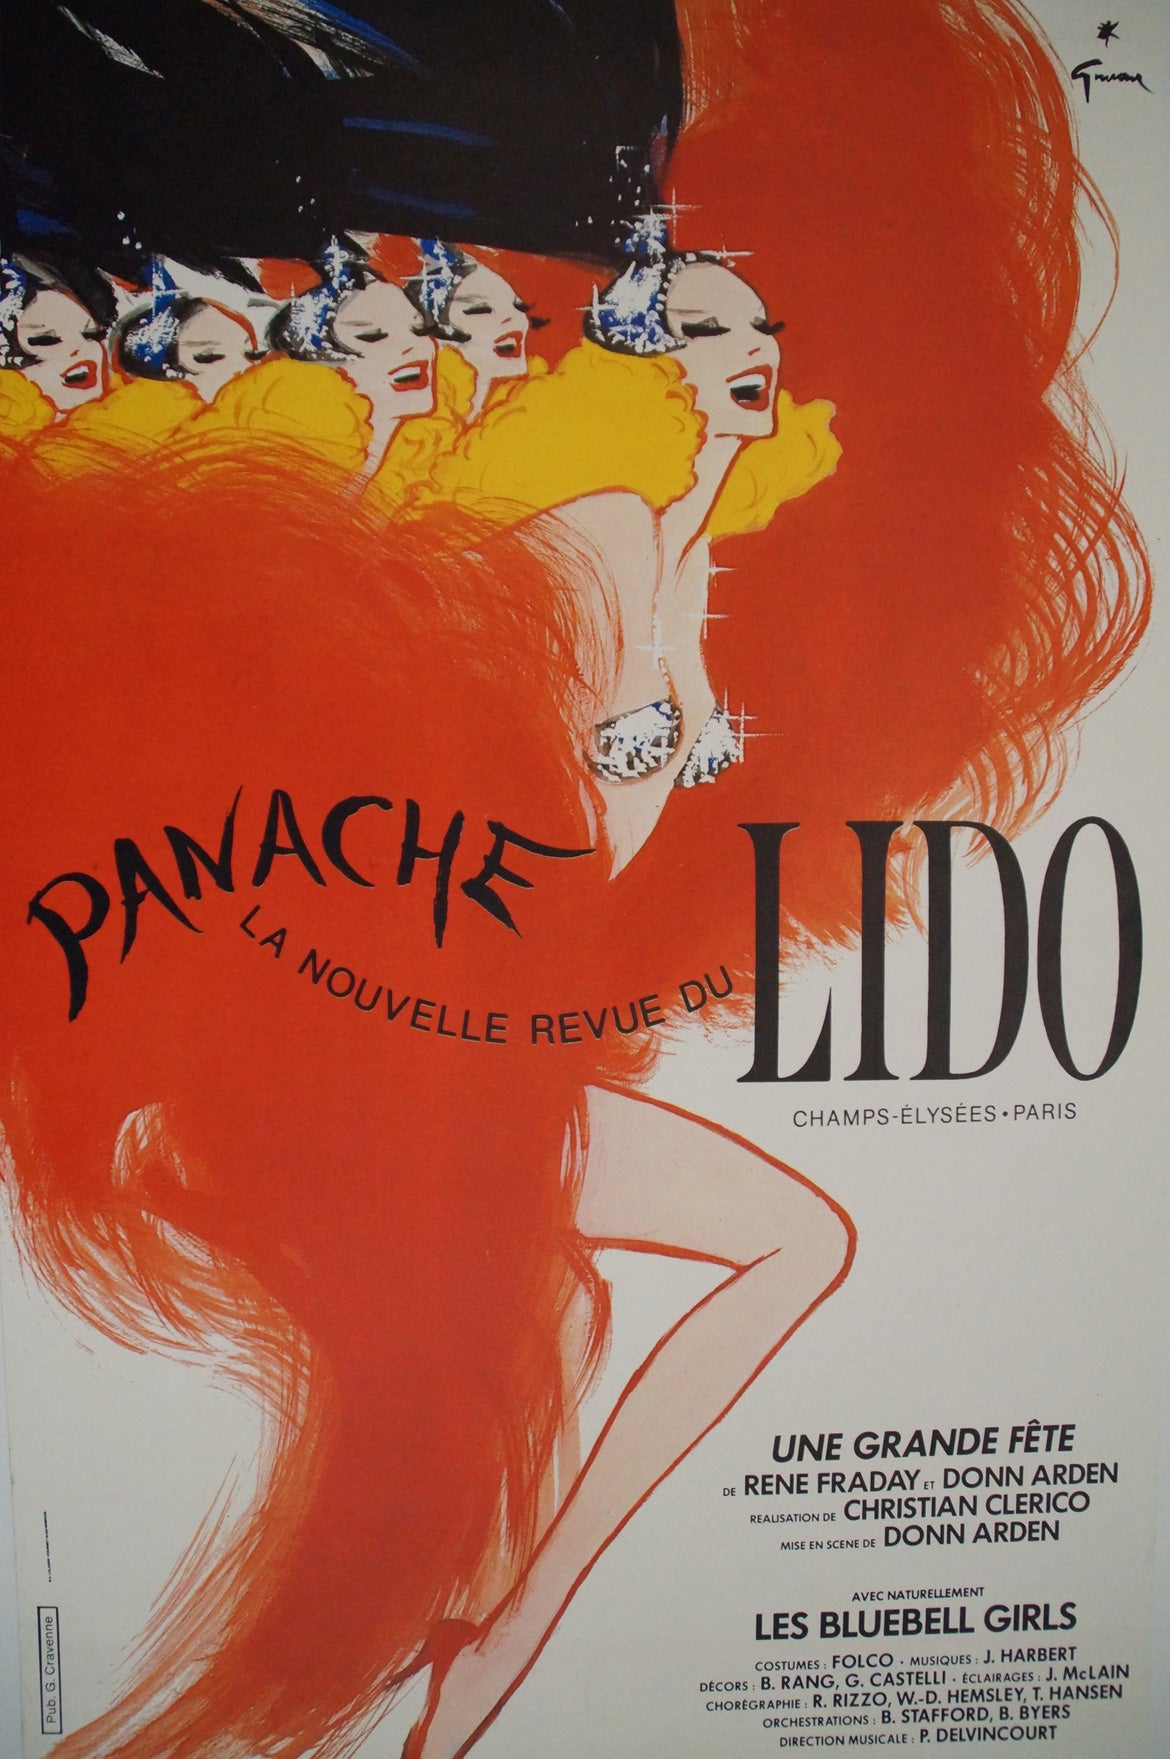 Affiche Vintage Originale "Panache" La nouvelle revue du lido Par René Gruau, 1985  